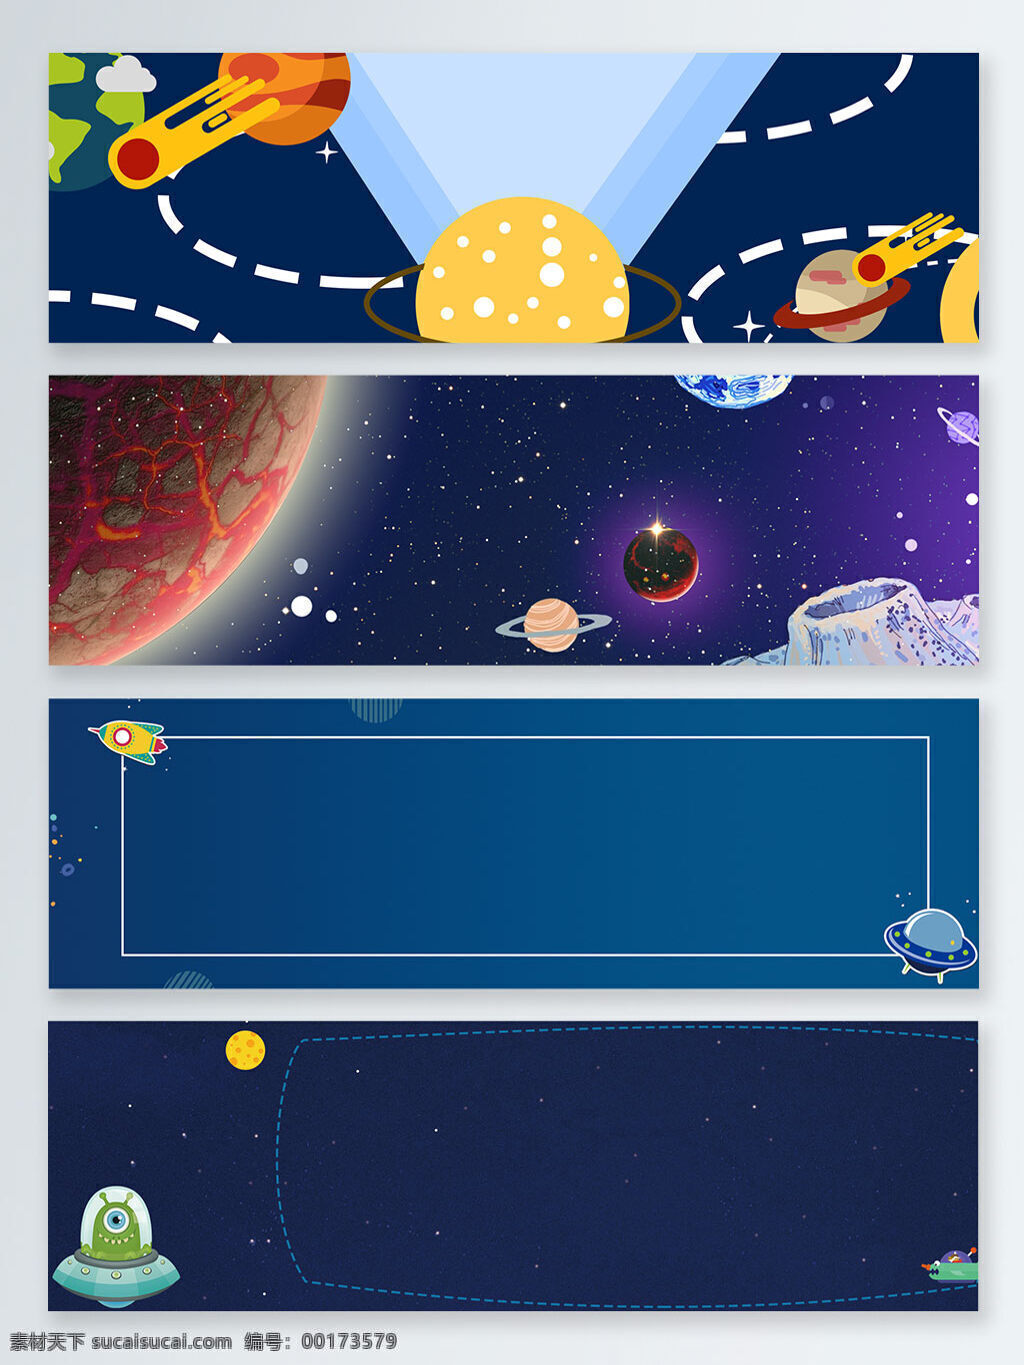 扁平 卡通 宇宙 星空 banner 海报 背景 蓝色 电商 星球 火箭 宇宙背景图片 火箭素材 扁平卡通背景 手绘外星 卡通手绘外星 宇航员 星球表面 虚线